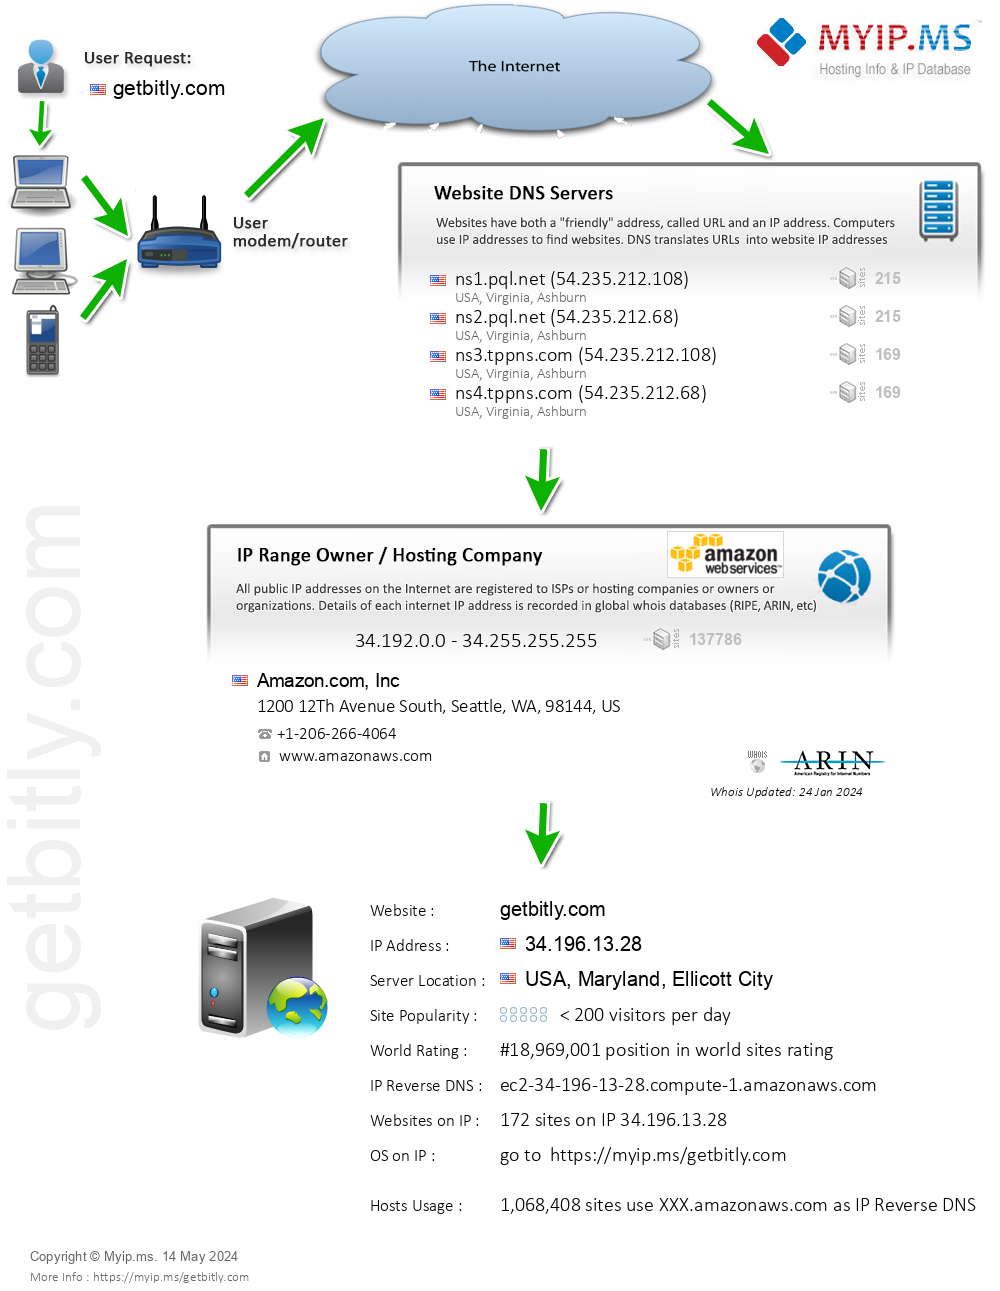 Getbitly.com - Website Hosting Visual IP Diagram